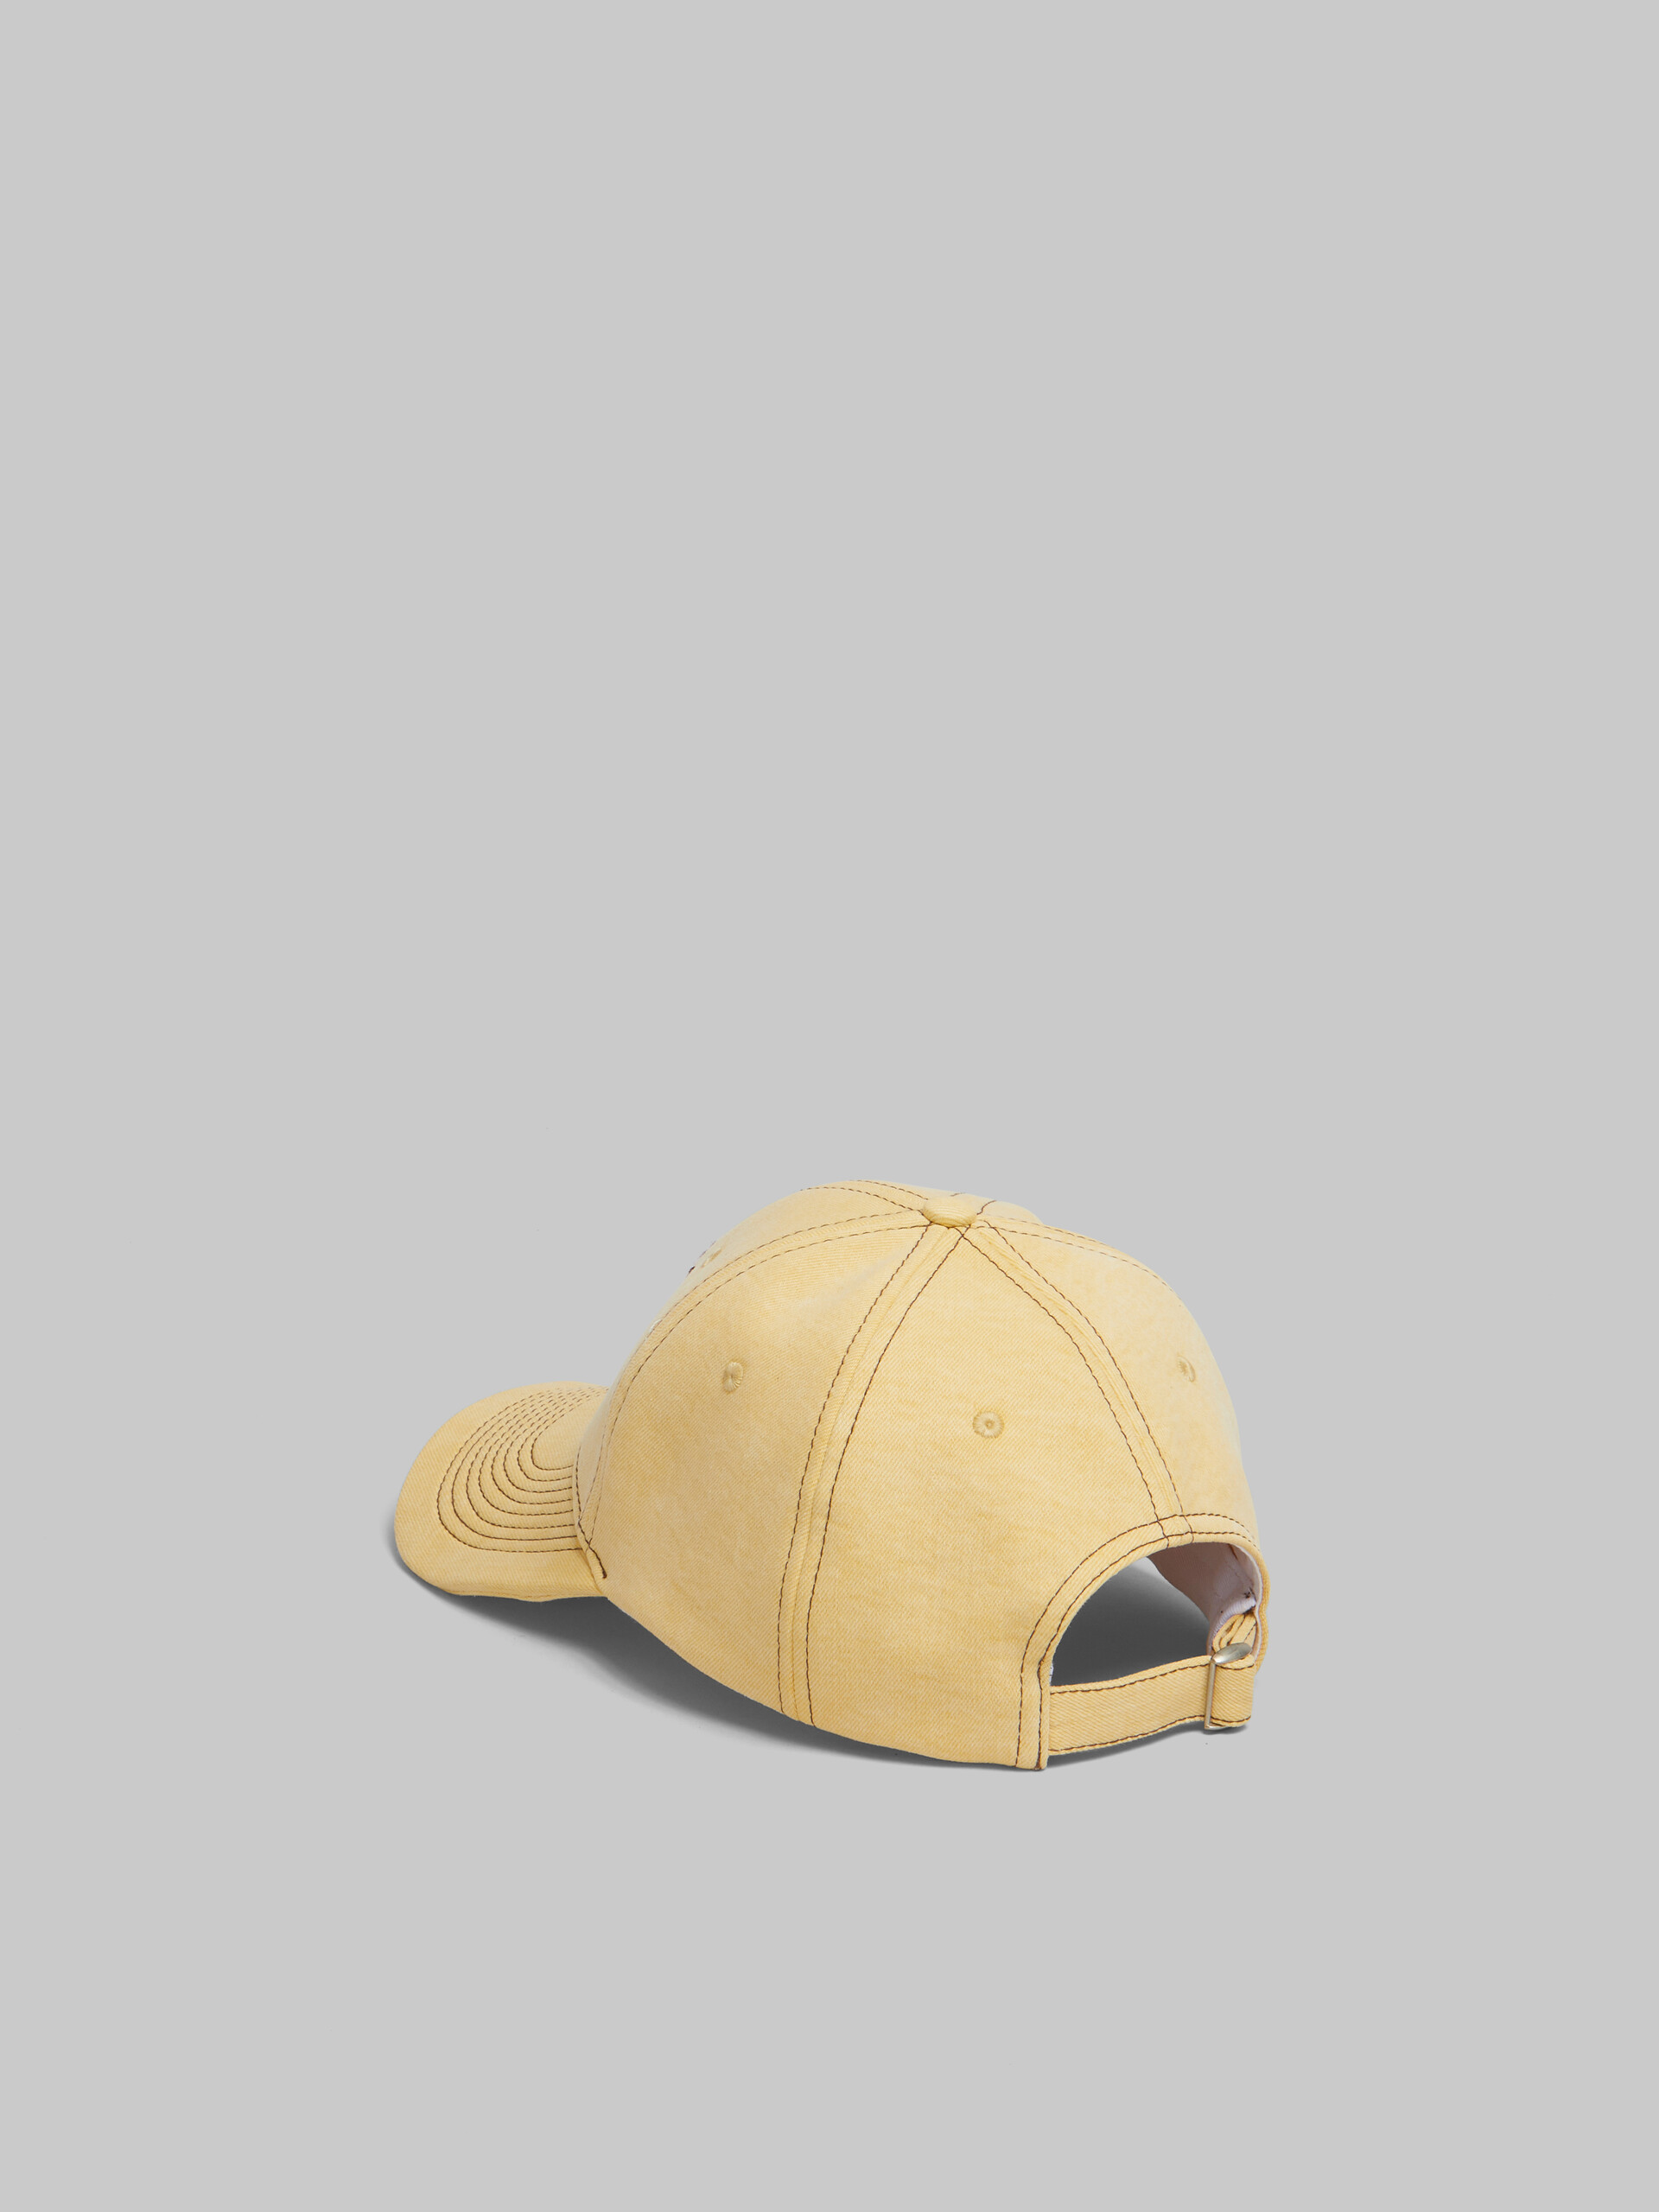 마르니 멘딩 디테일 옐로우 오가닉 데님 베이스볼 캡 - 모자 - Image 3